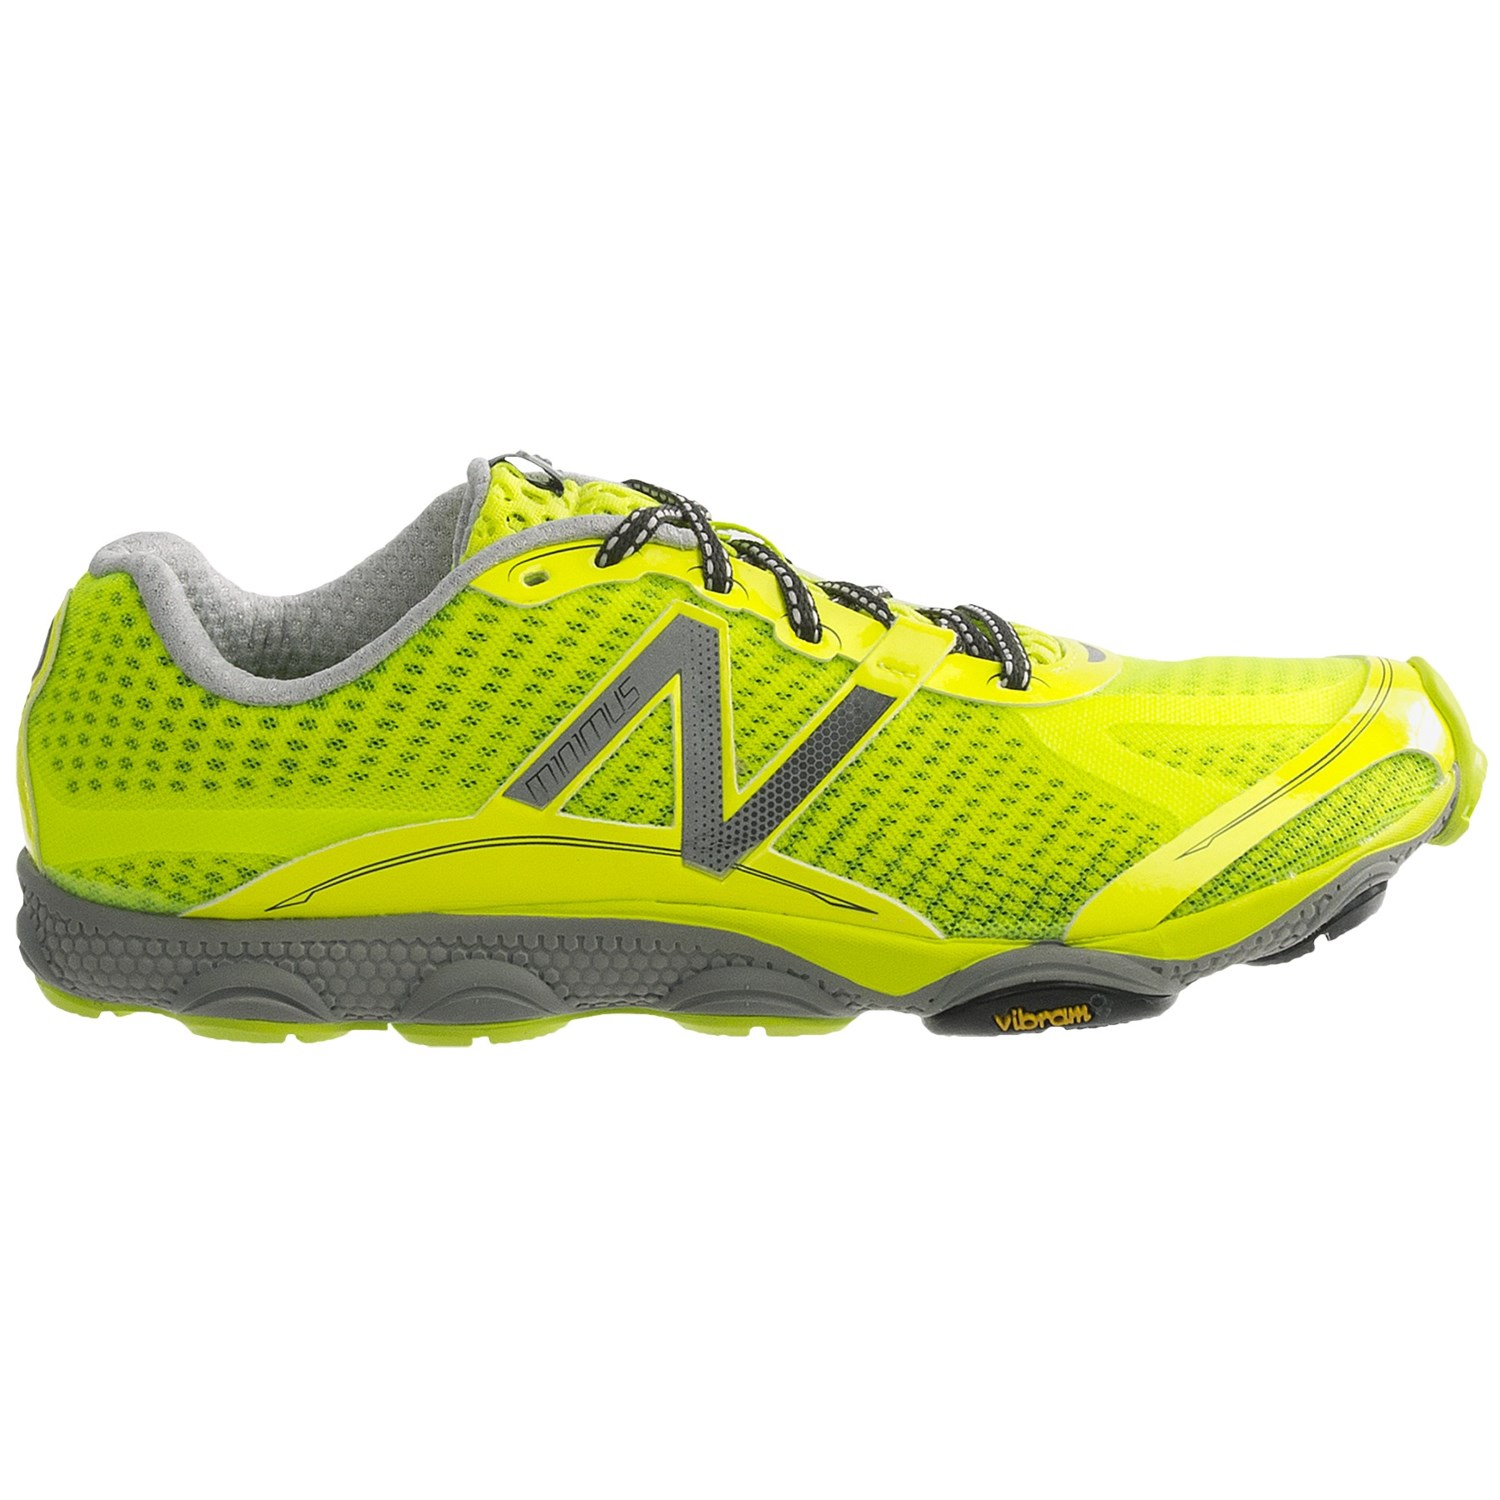 nike shox stunner basket - New Balance Minimus 1010 Running Shoes (For Men) 6789C - Save 27%